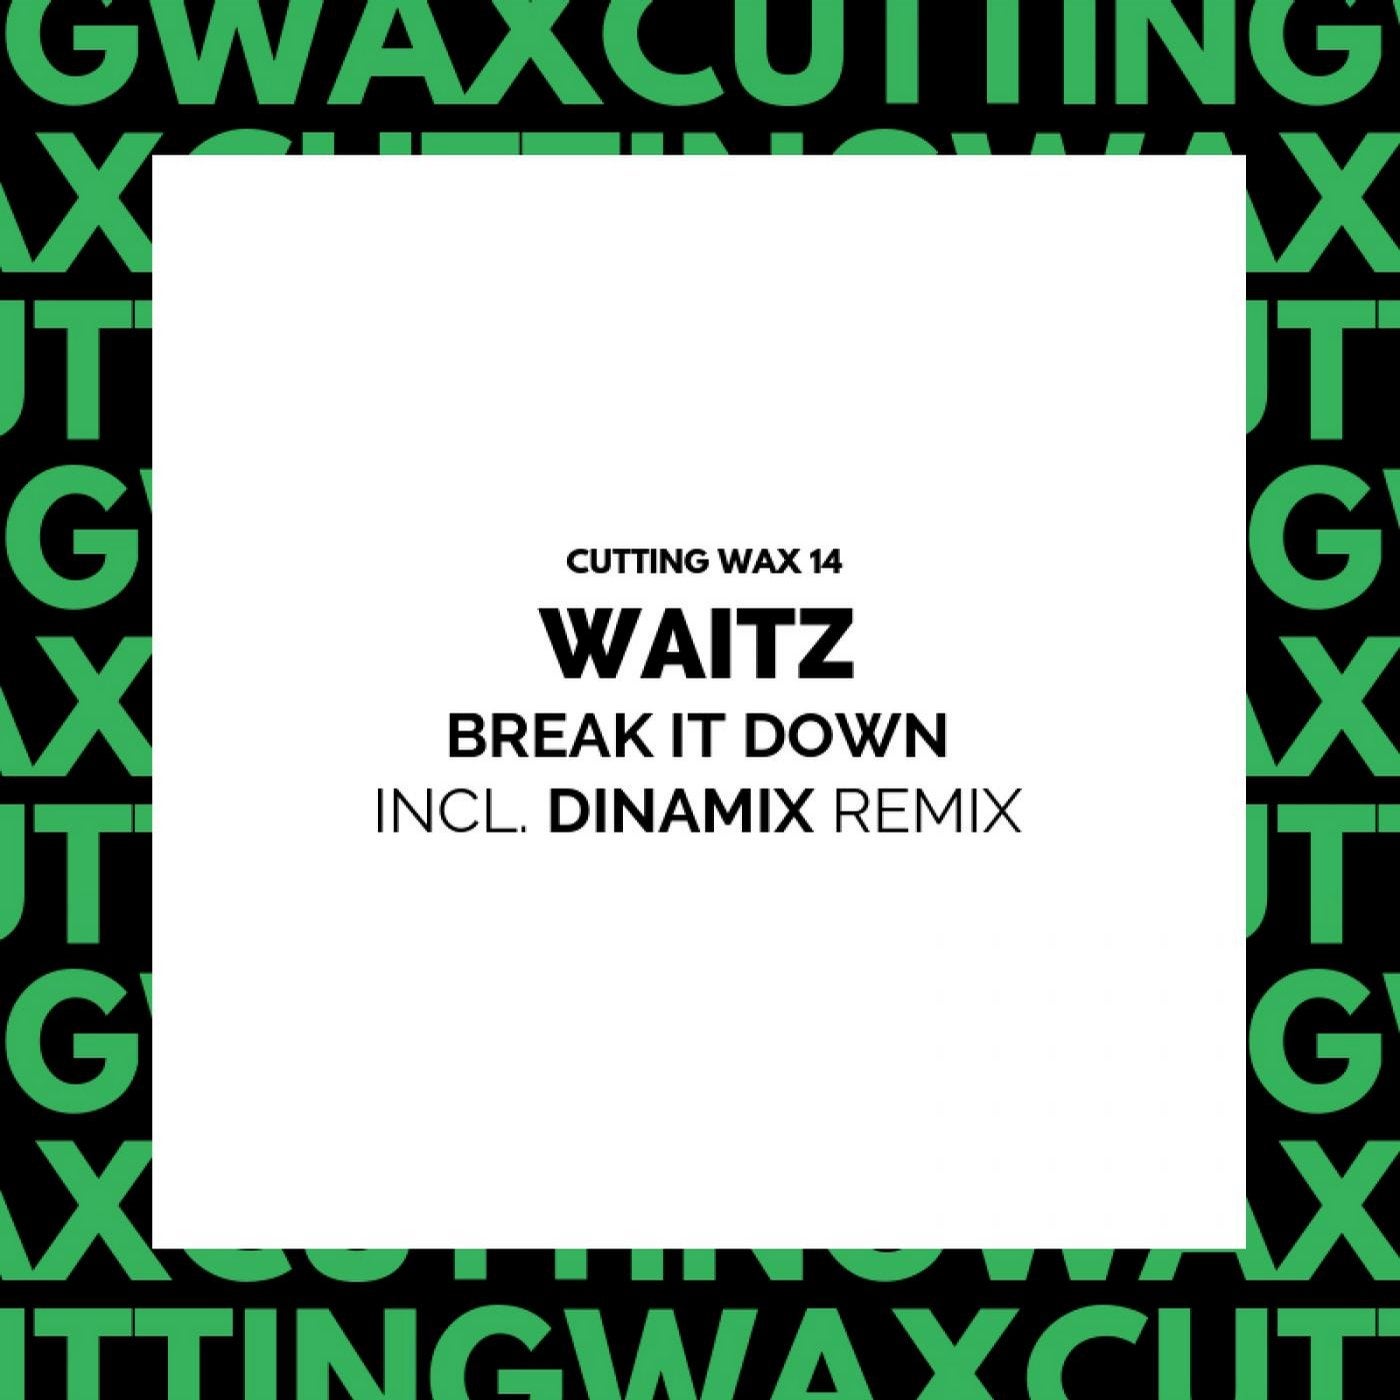 Break It Down (Incl. Dinamix Remix)